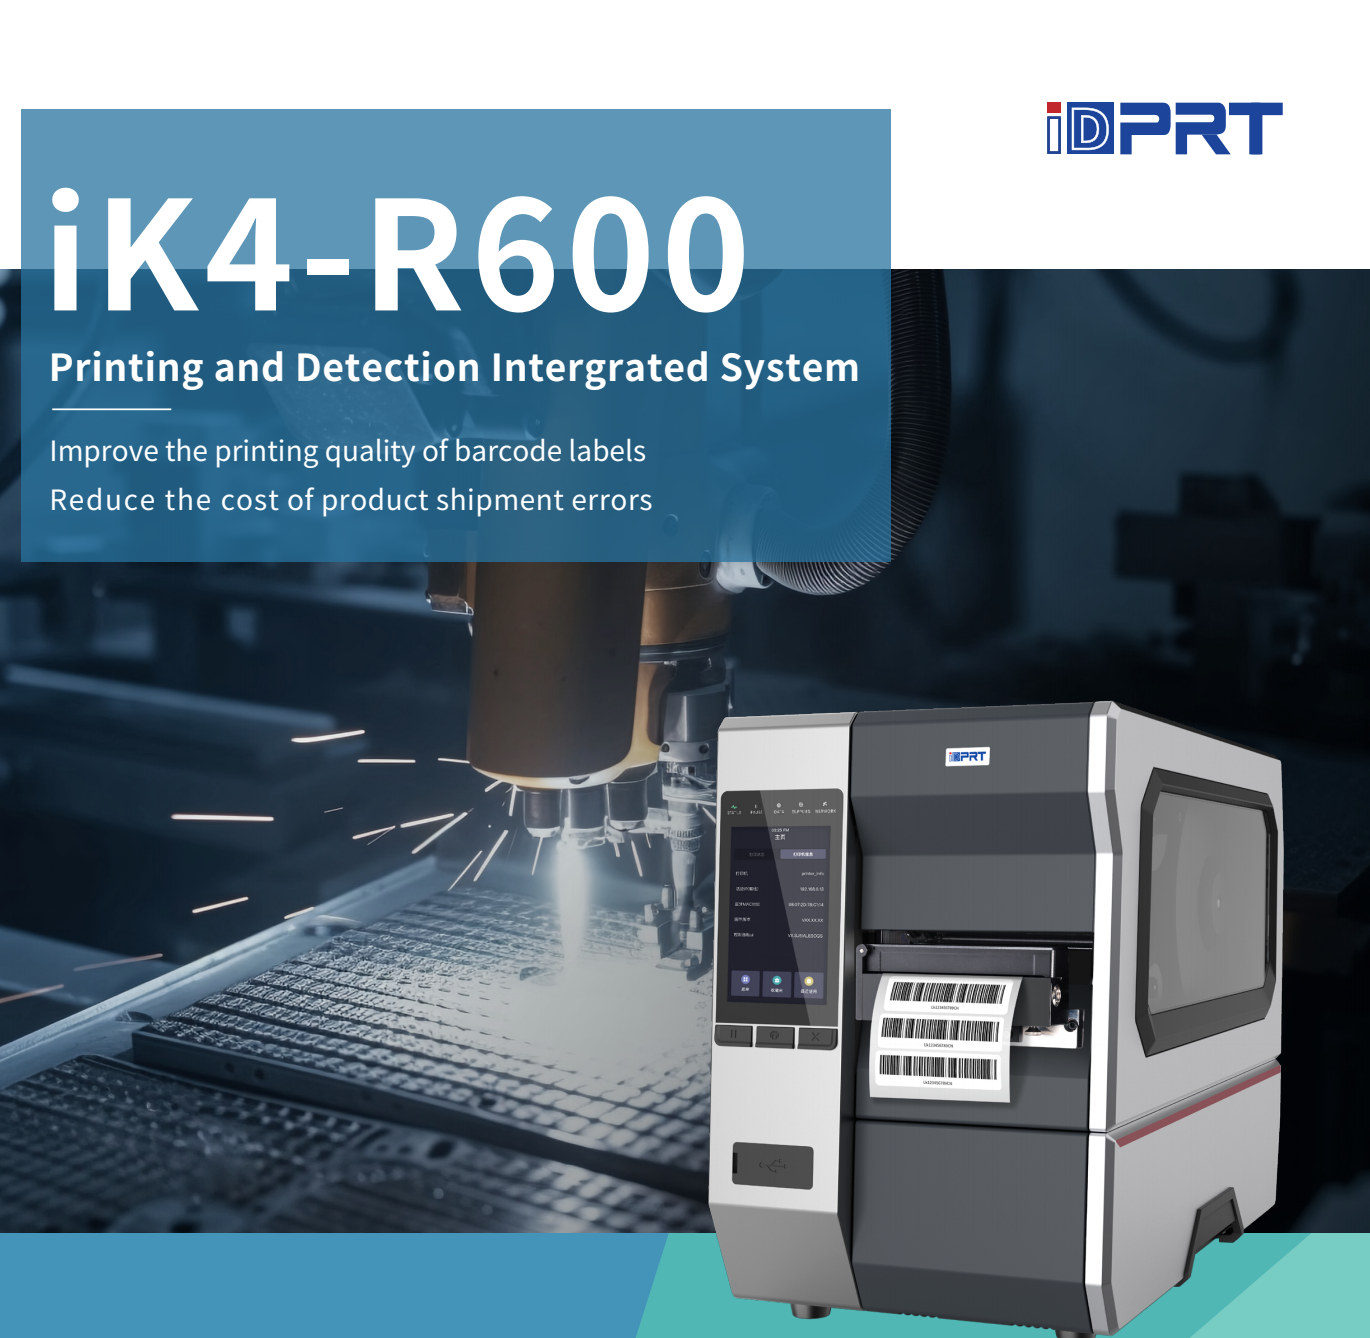 iDPRT iK4 R600 Impressoras de Código de Barras com Verificadores.png